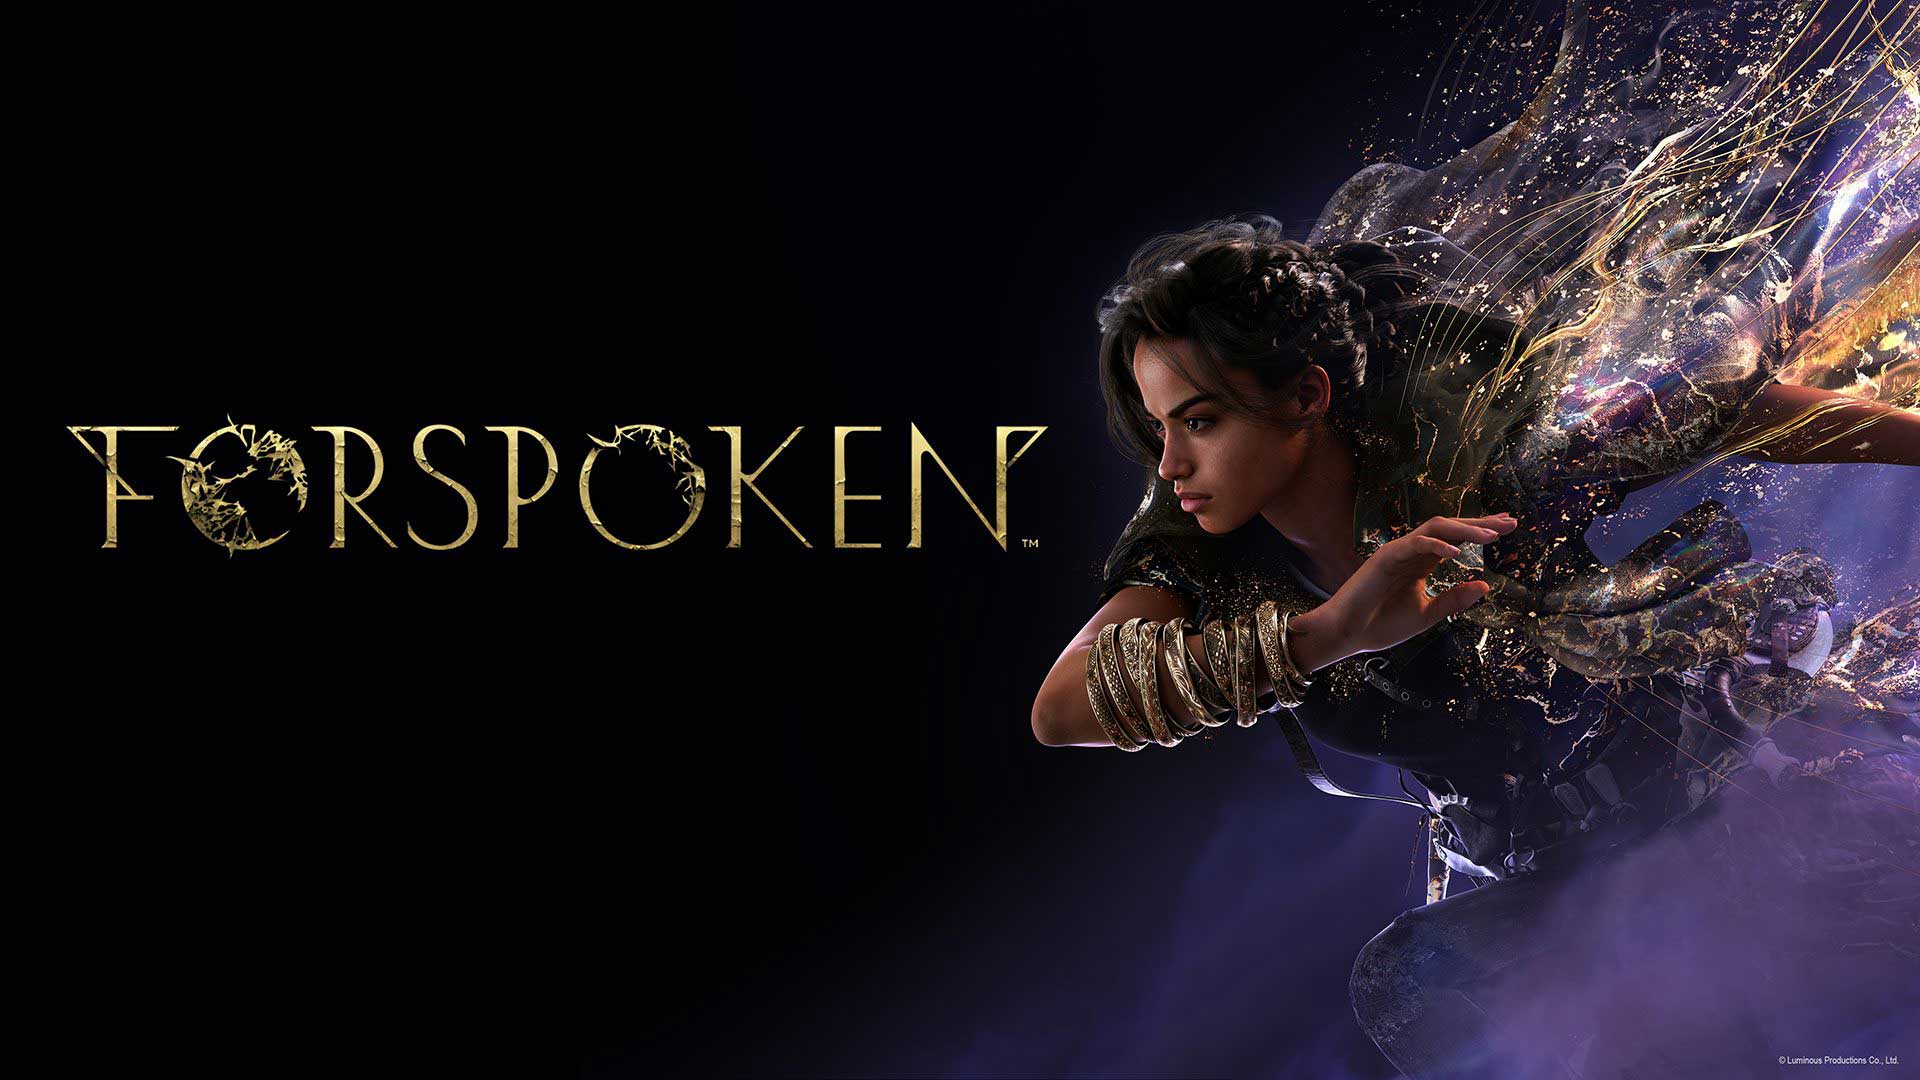 تصویر رسمی بازی Forspoken، انحصاری کنسولی پلی استیشن 5 از استودیو Luminous Productions شرکت اسکوئر انیکس